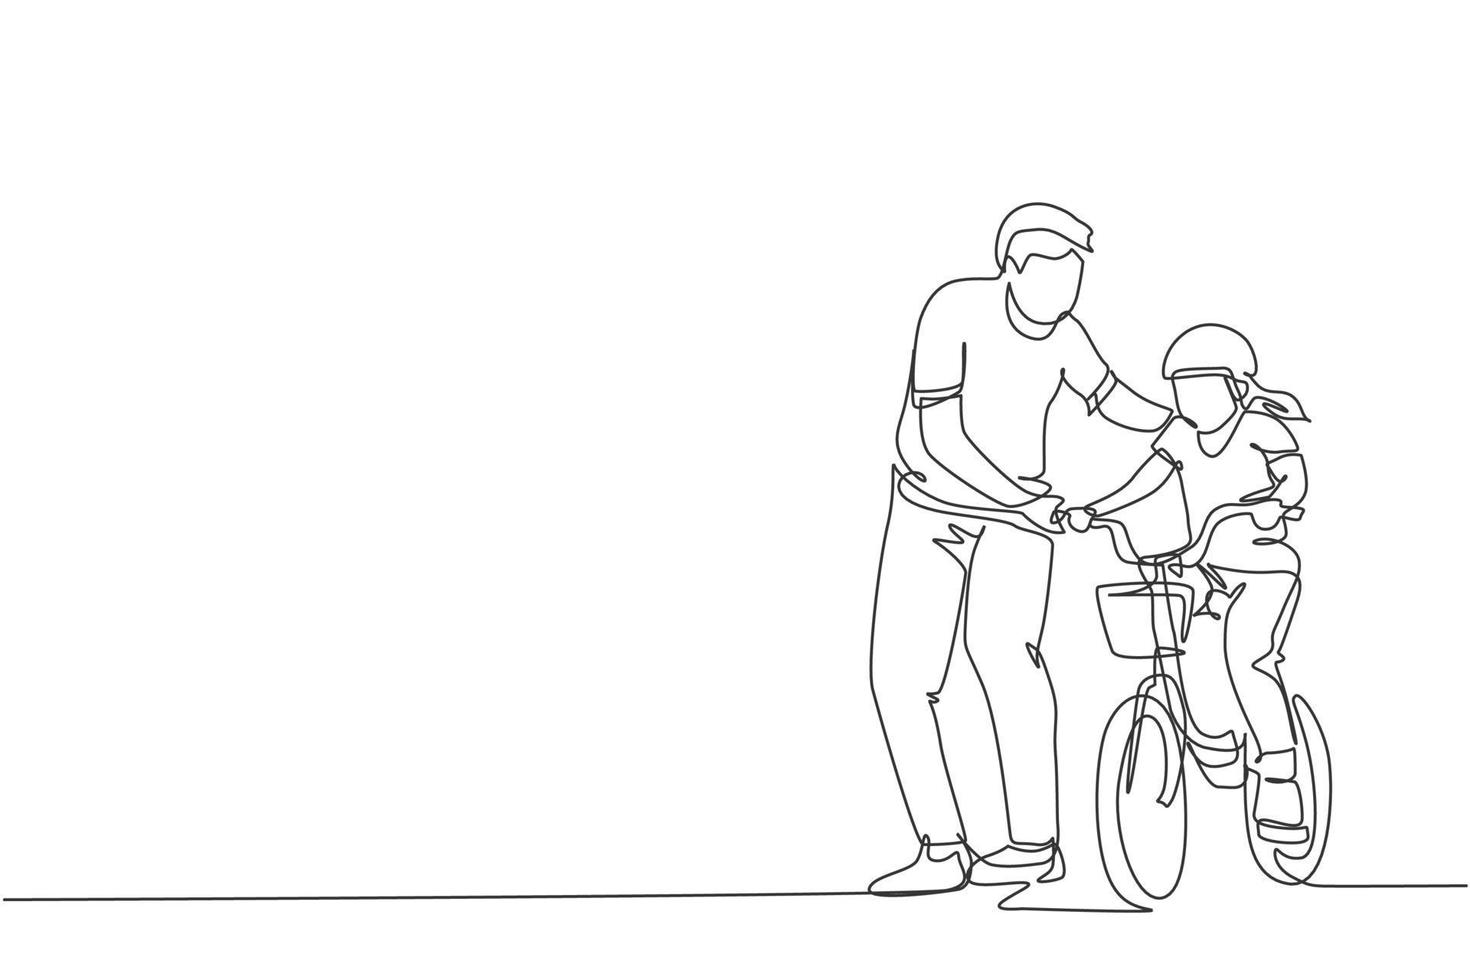 un unico disegno a tratteggio giovane padre che insegna a sua figlia in bicicletta all'illustrazione grafica vettoriale del parco pubblico. lezione di paternità. concetto di tempo familiare urbano. design moderno a linea continua